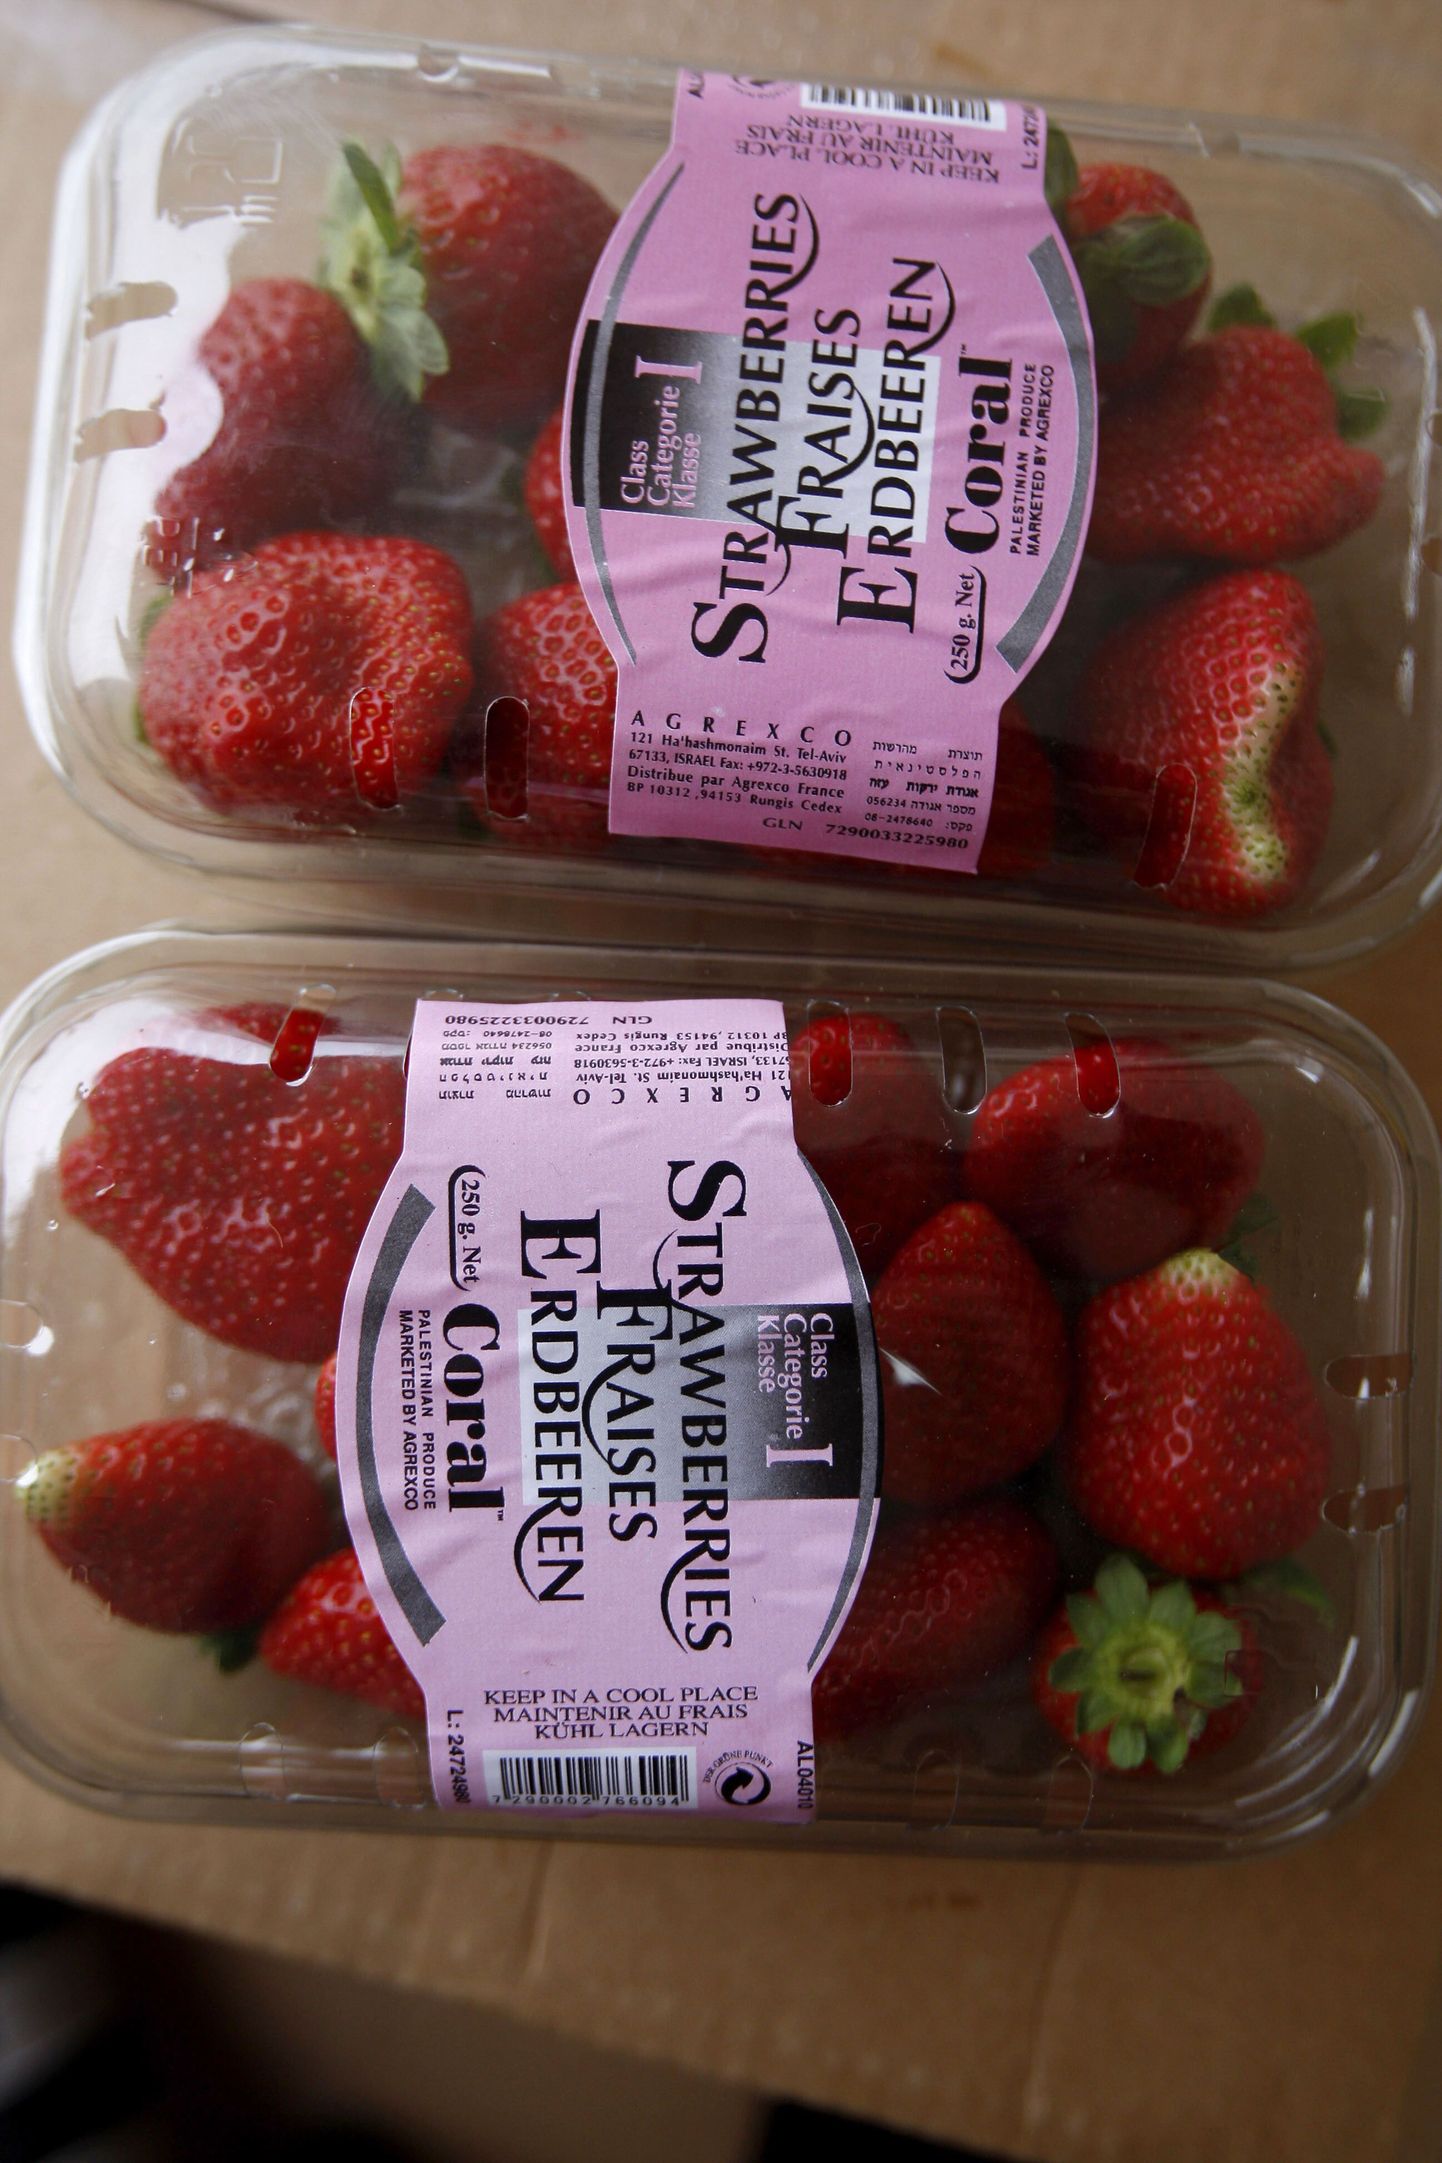 Gaza tsoonis kasvatatud maasikad